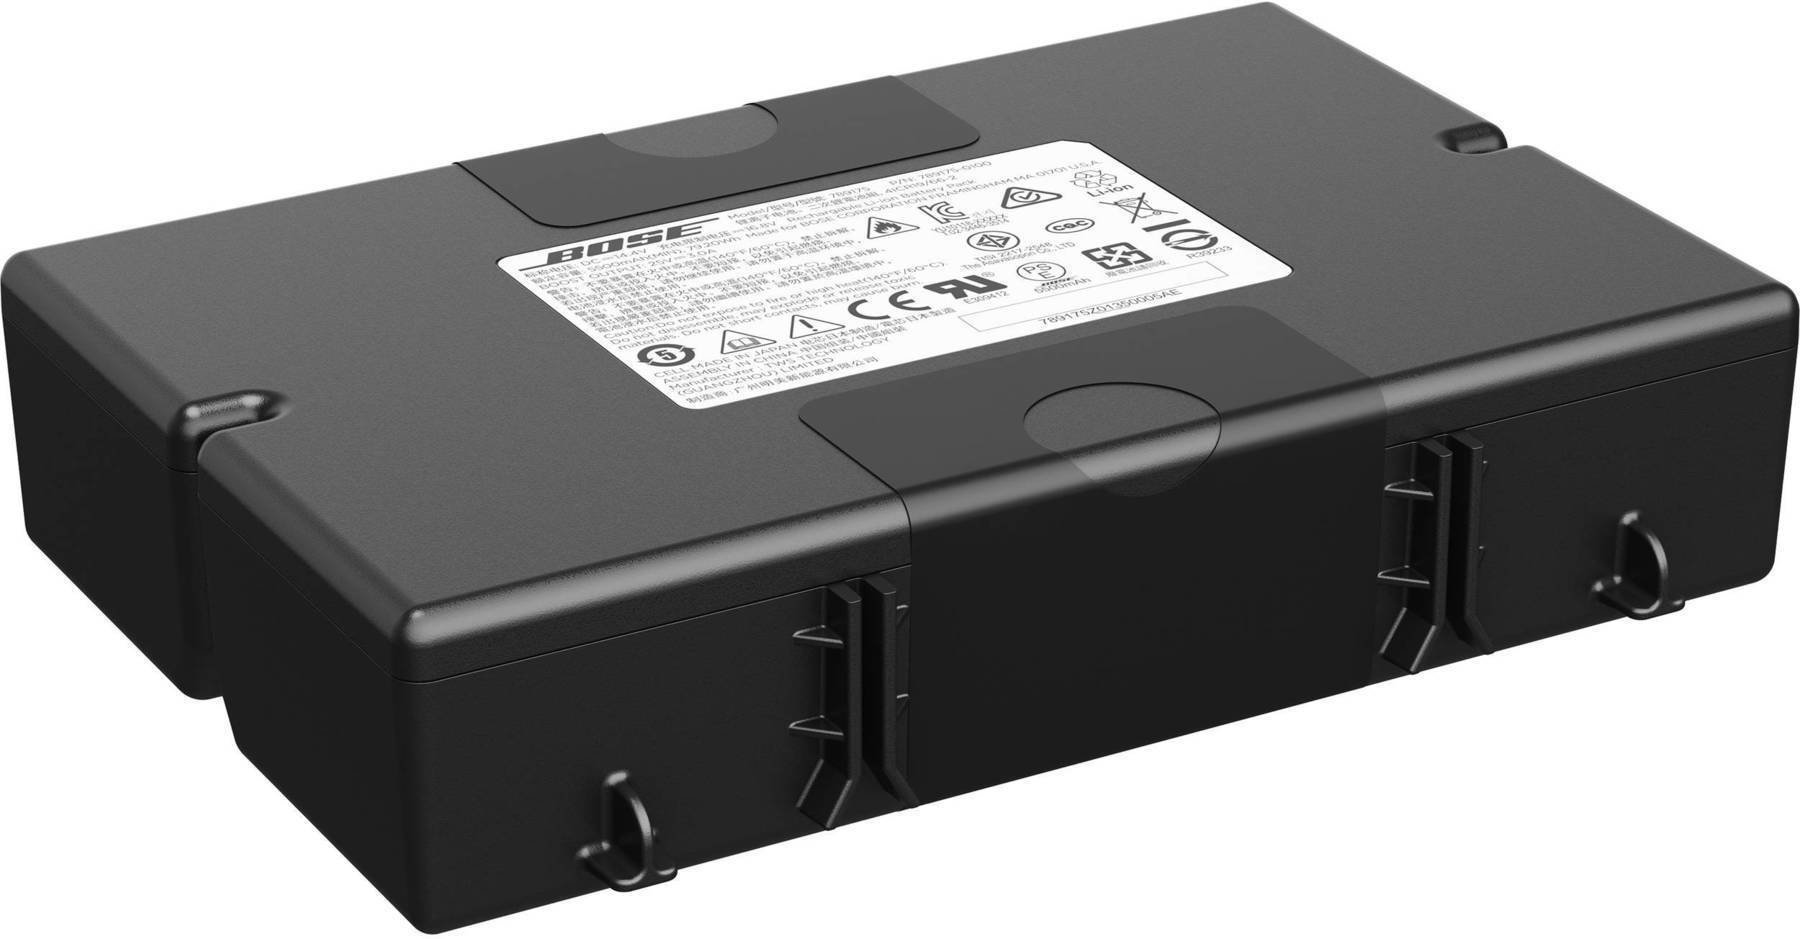 Náhradní díl pro Reproduktor Bose S1 Pro System Battery Pack Náhradní díl pro Reproduktor